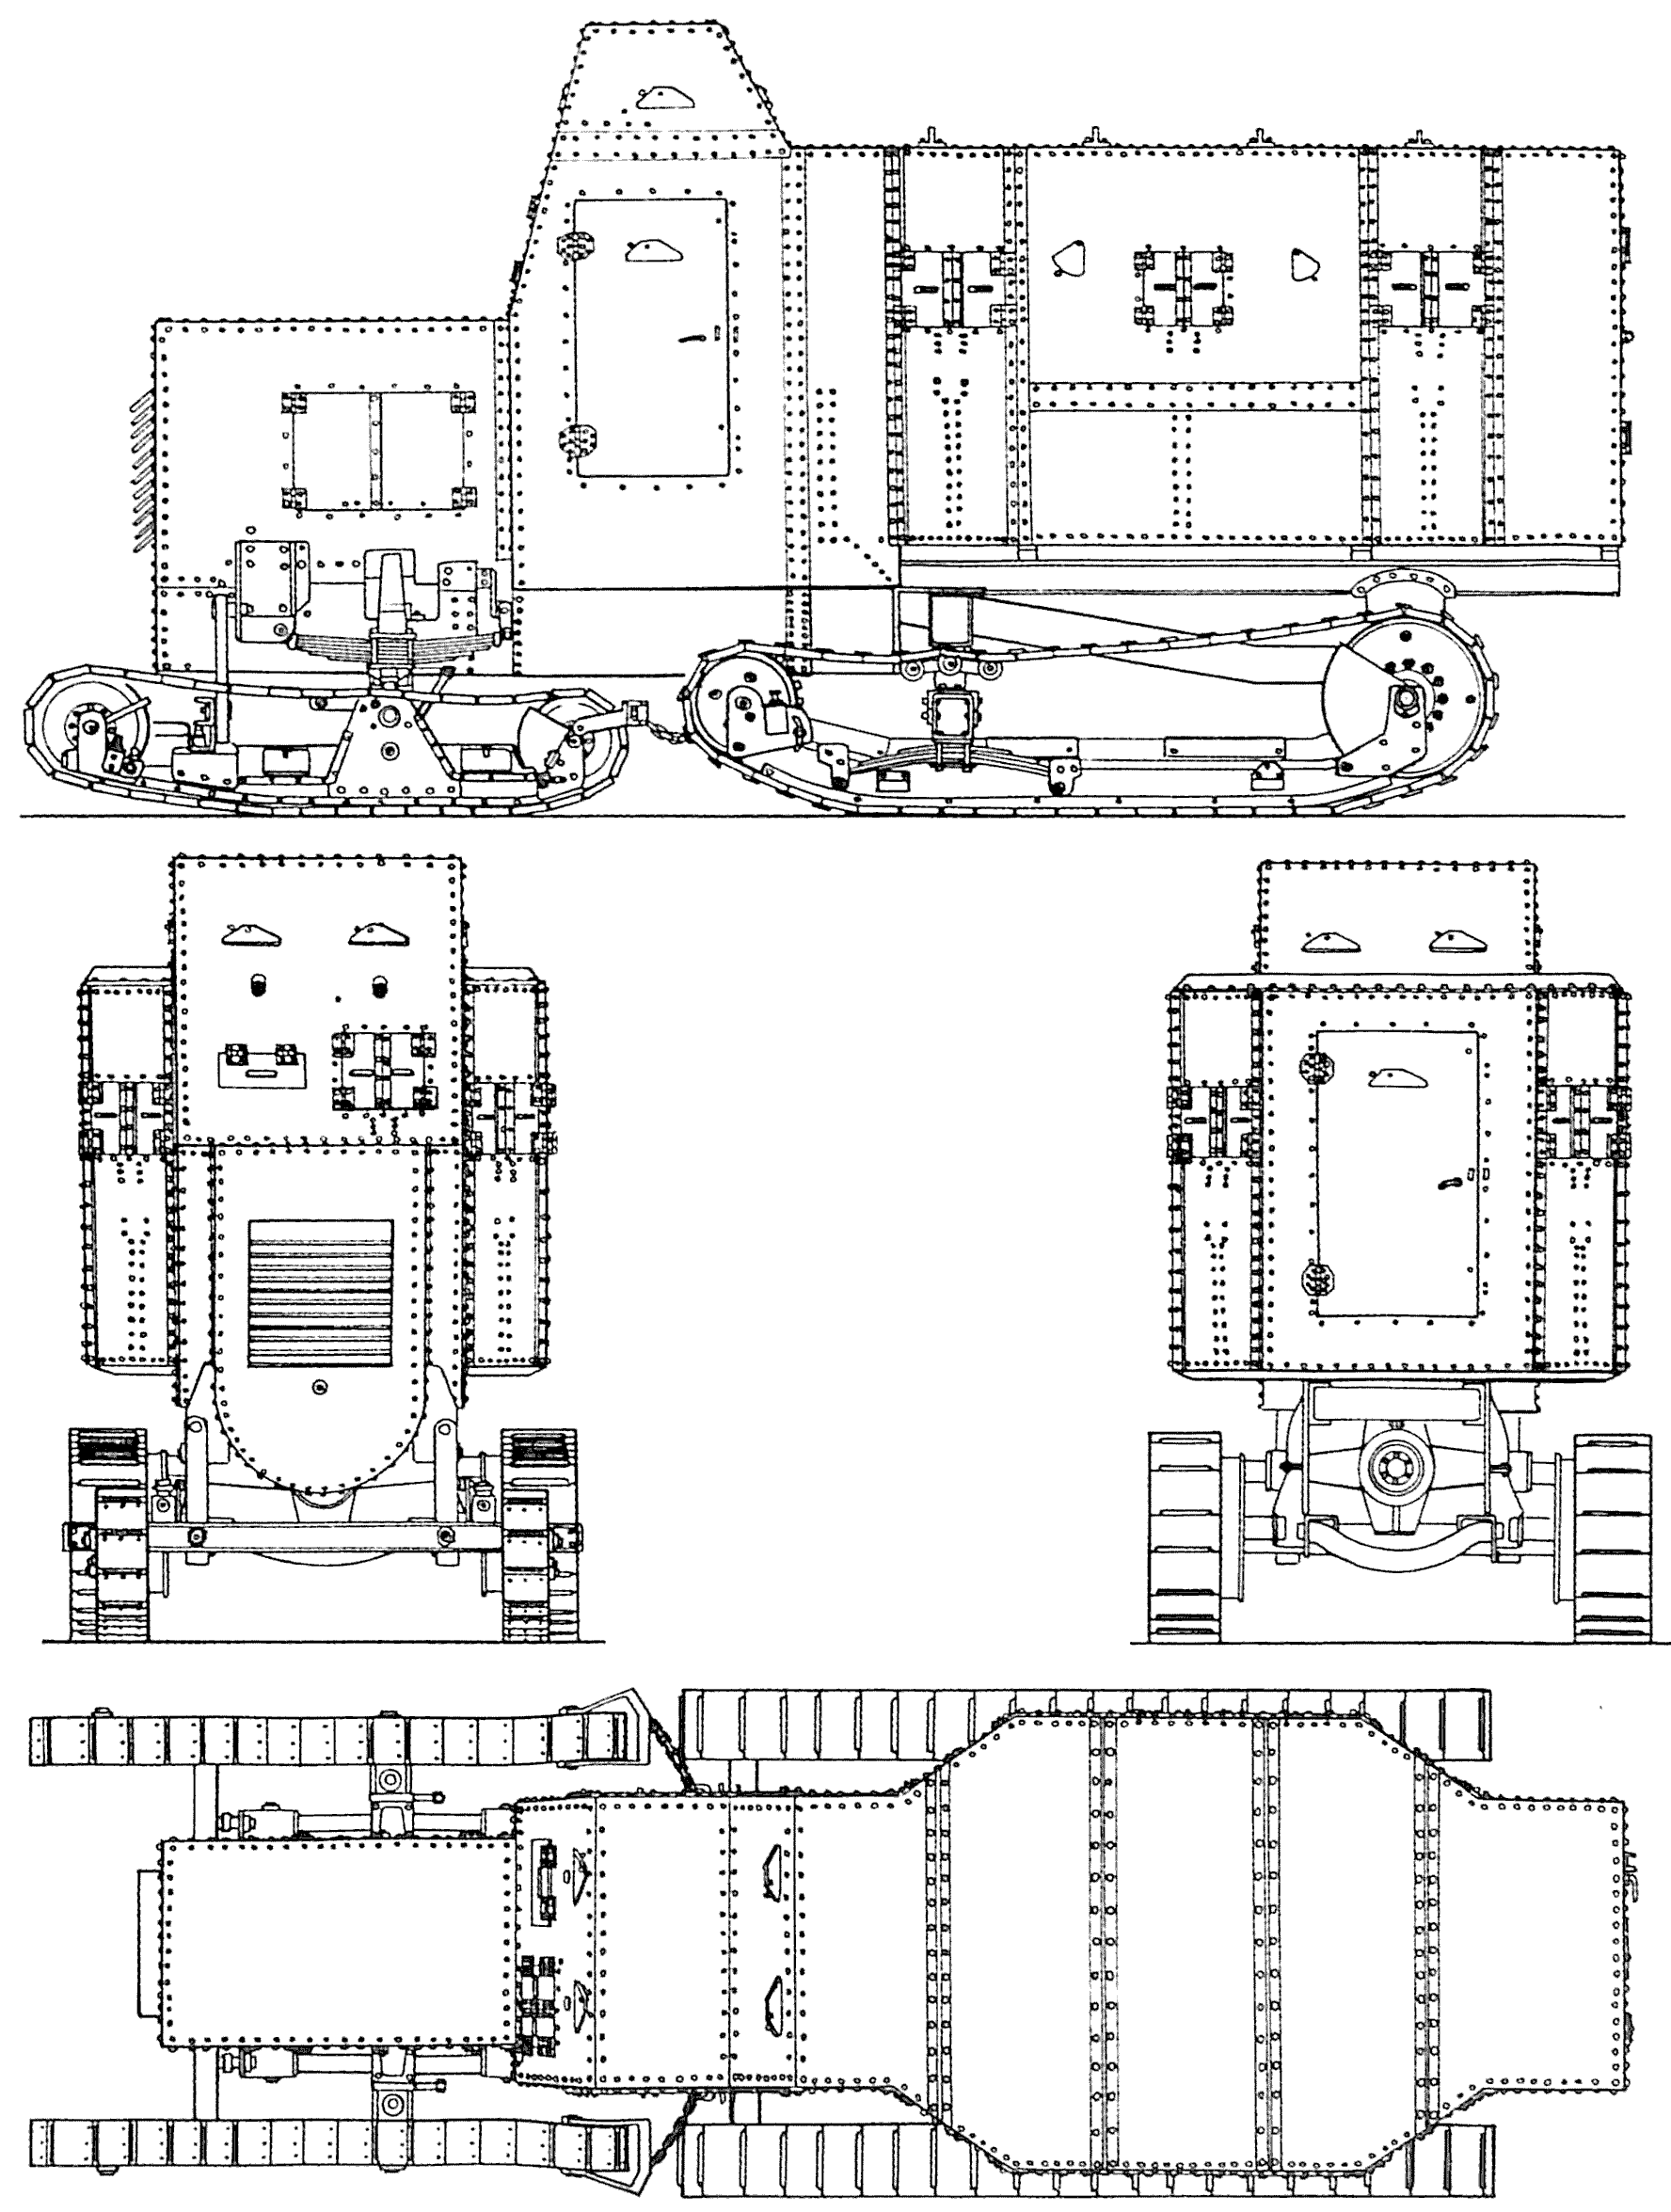 Marienwagen I mit Panzeraufbau blueprint